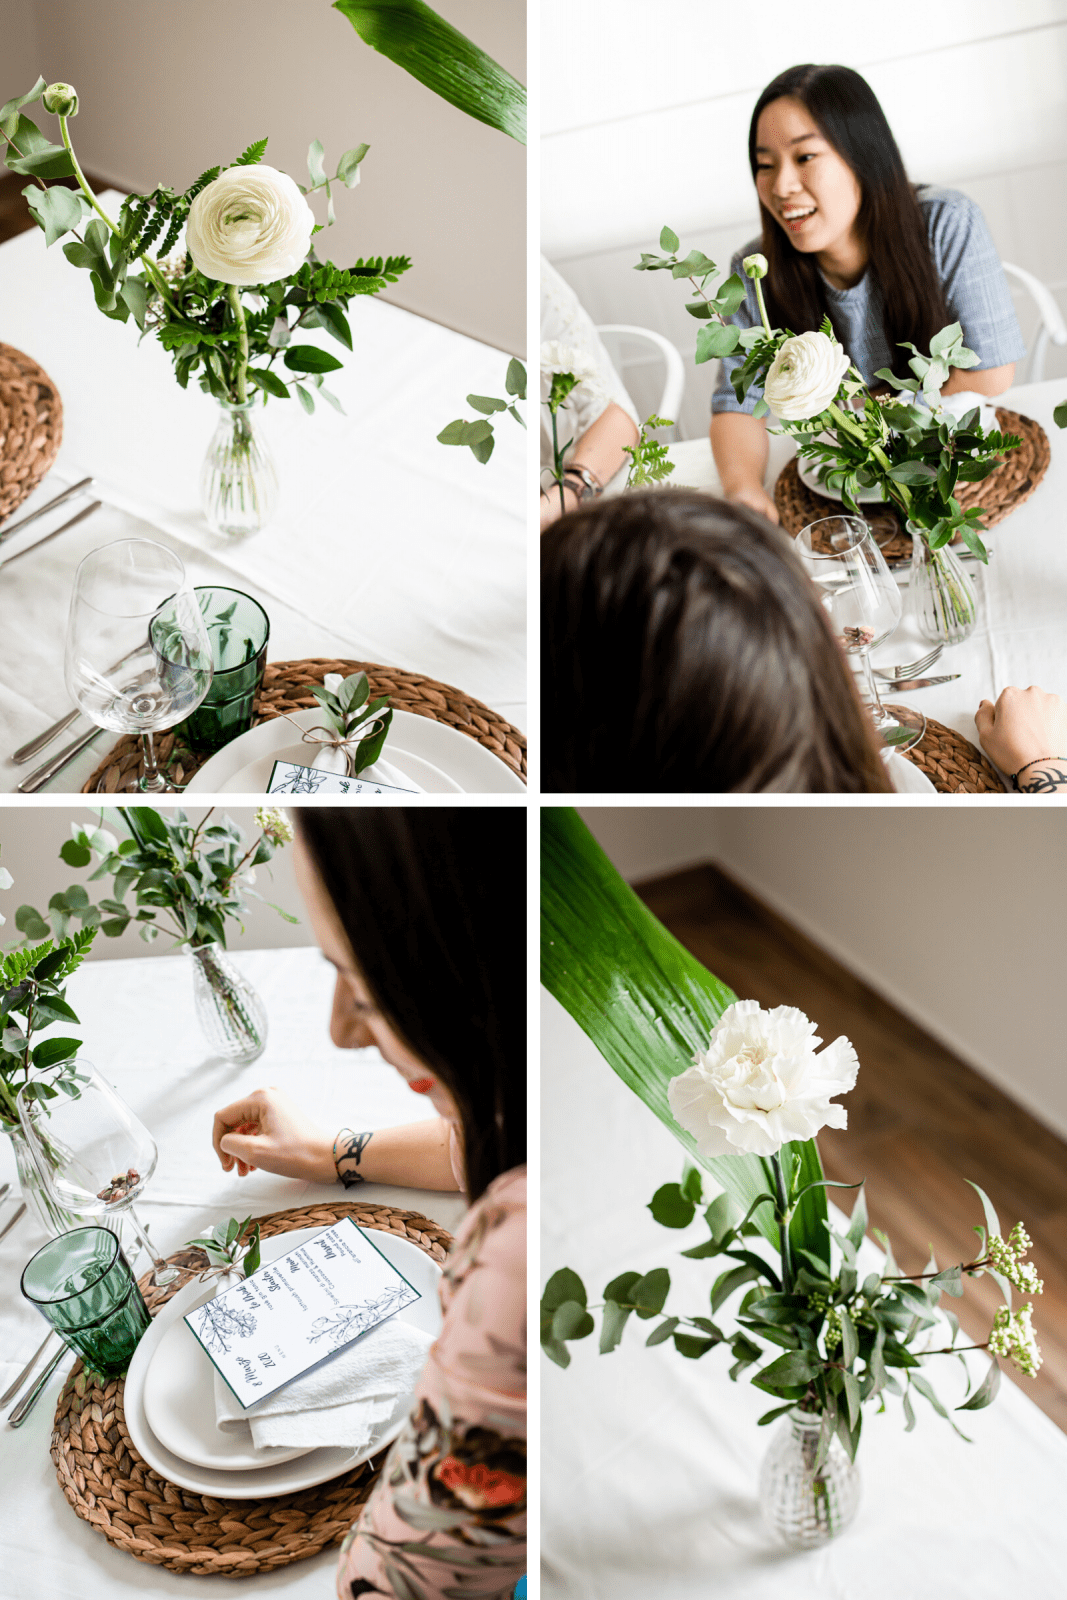 allestimento tavola primaverile per la festa della donna con verde e fiori bianchi